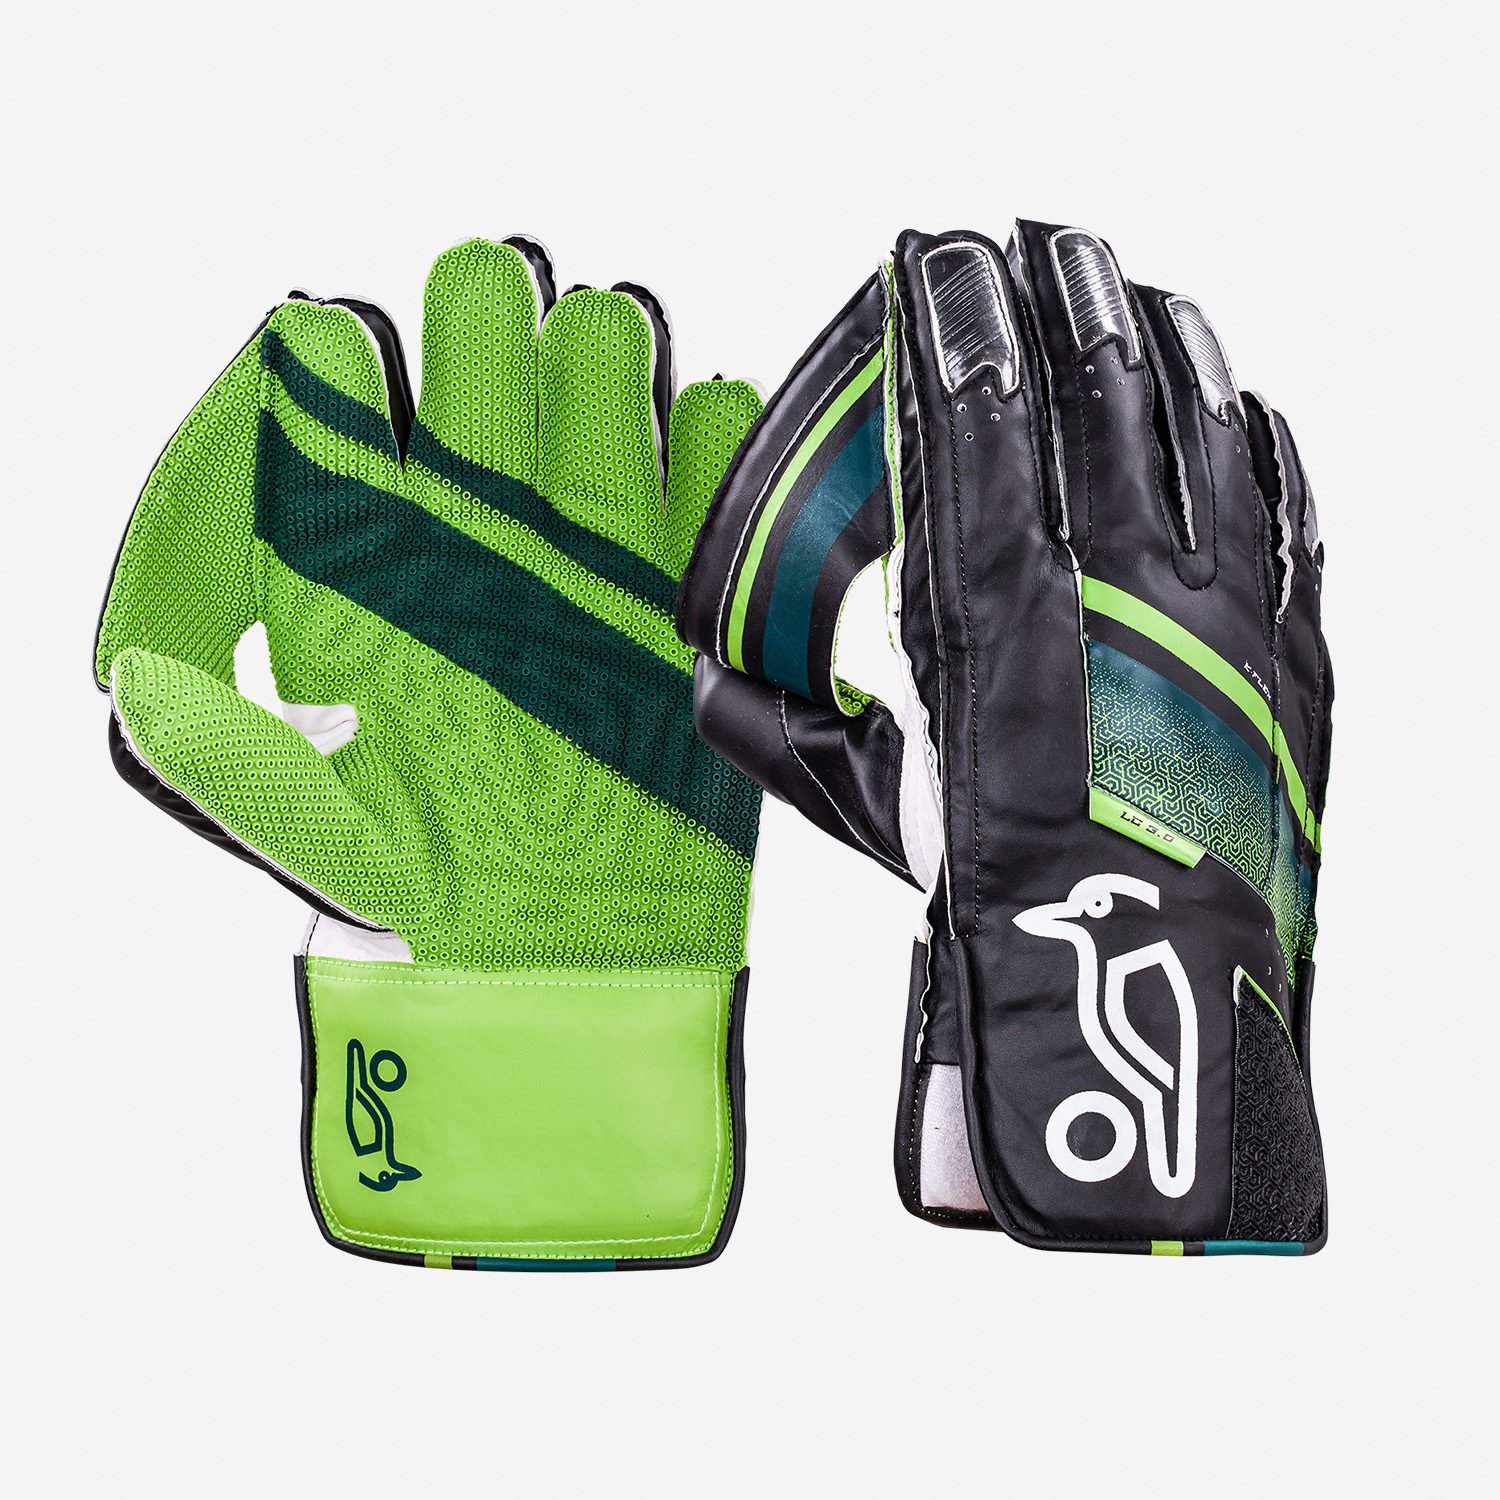 Kookaburra LC 3.0 Cricket Wicket Keeping Gloves 